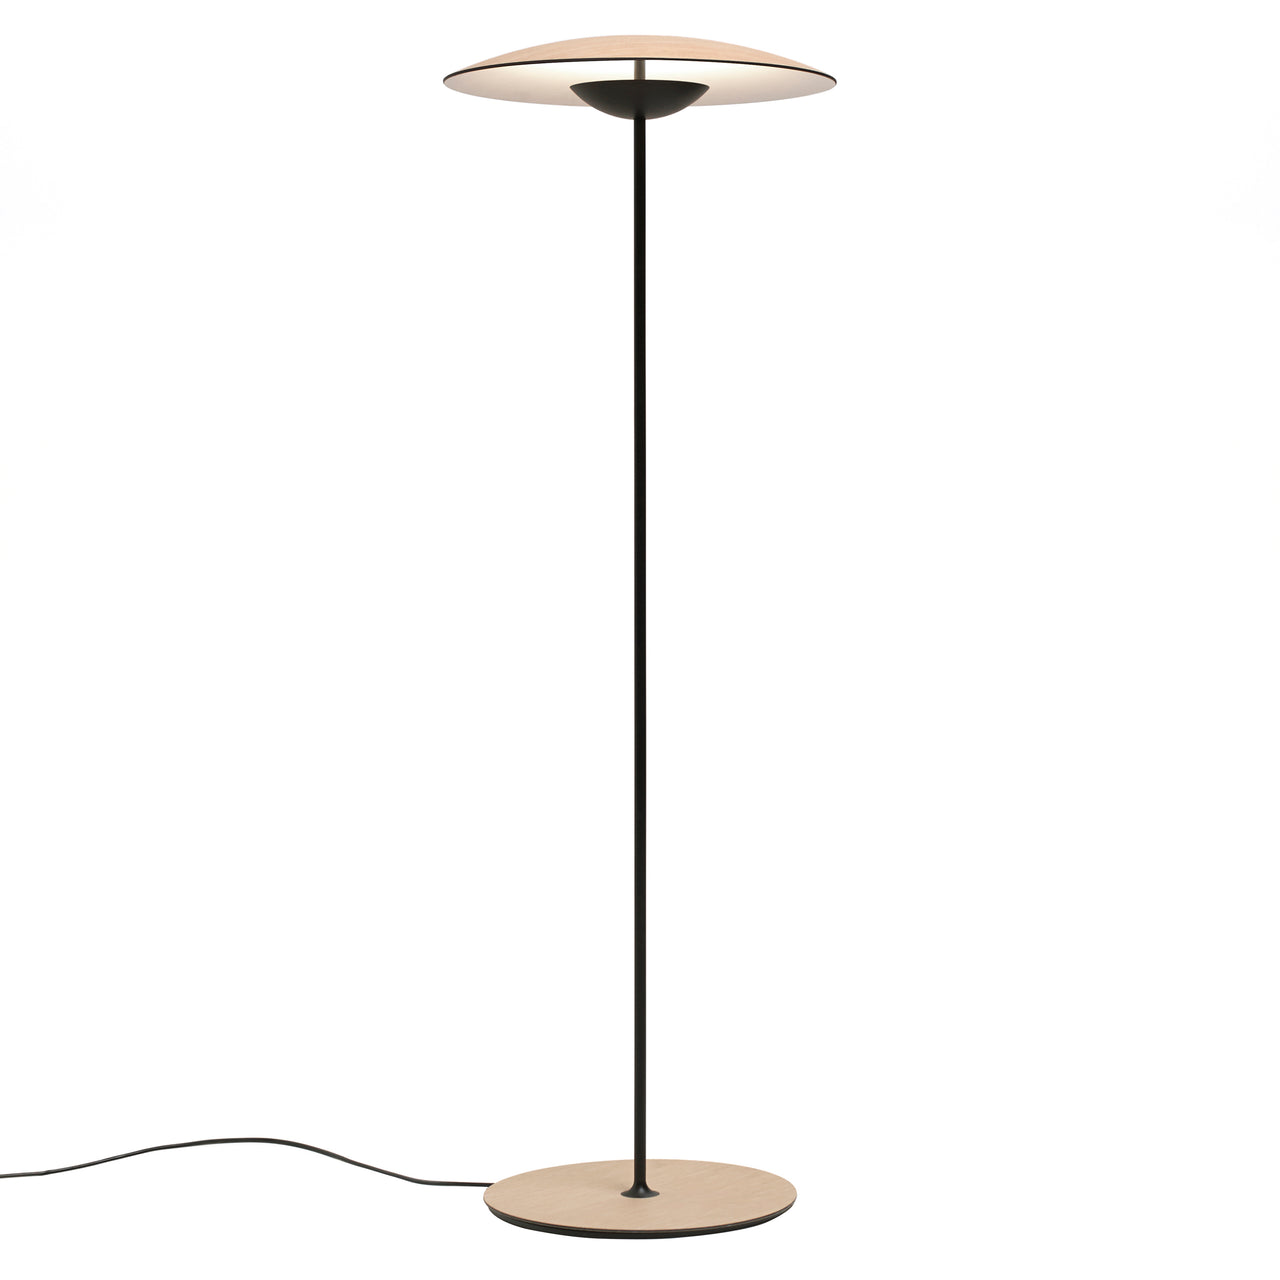 Ginger P Floor Lamp: Oak